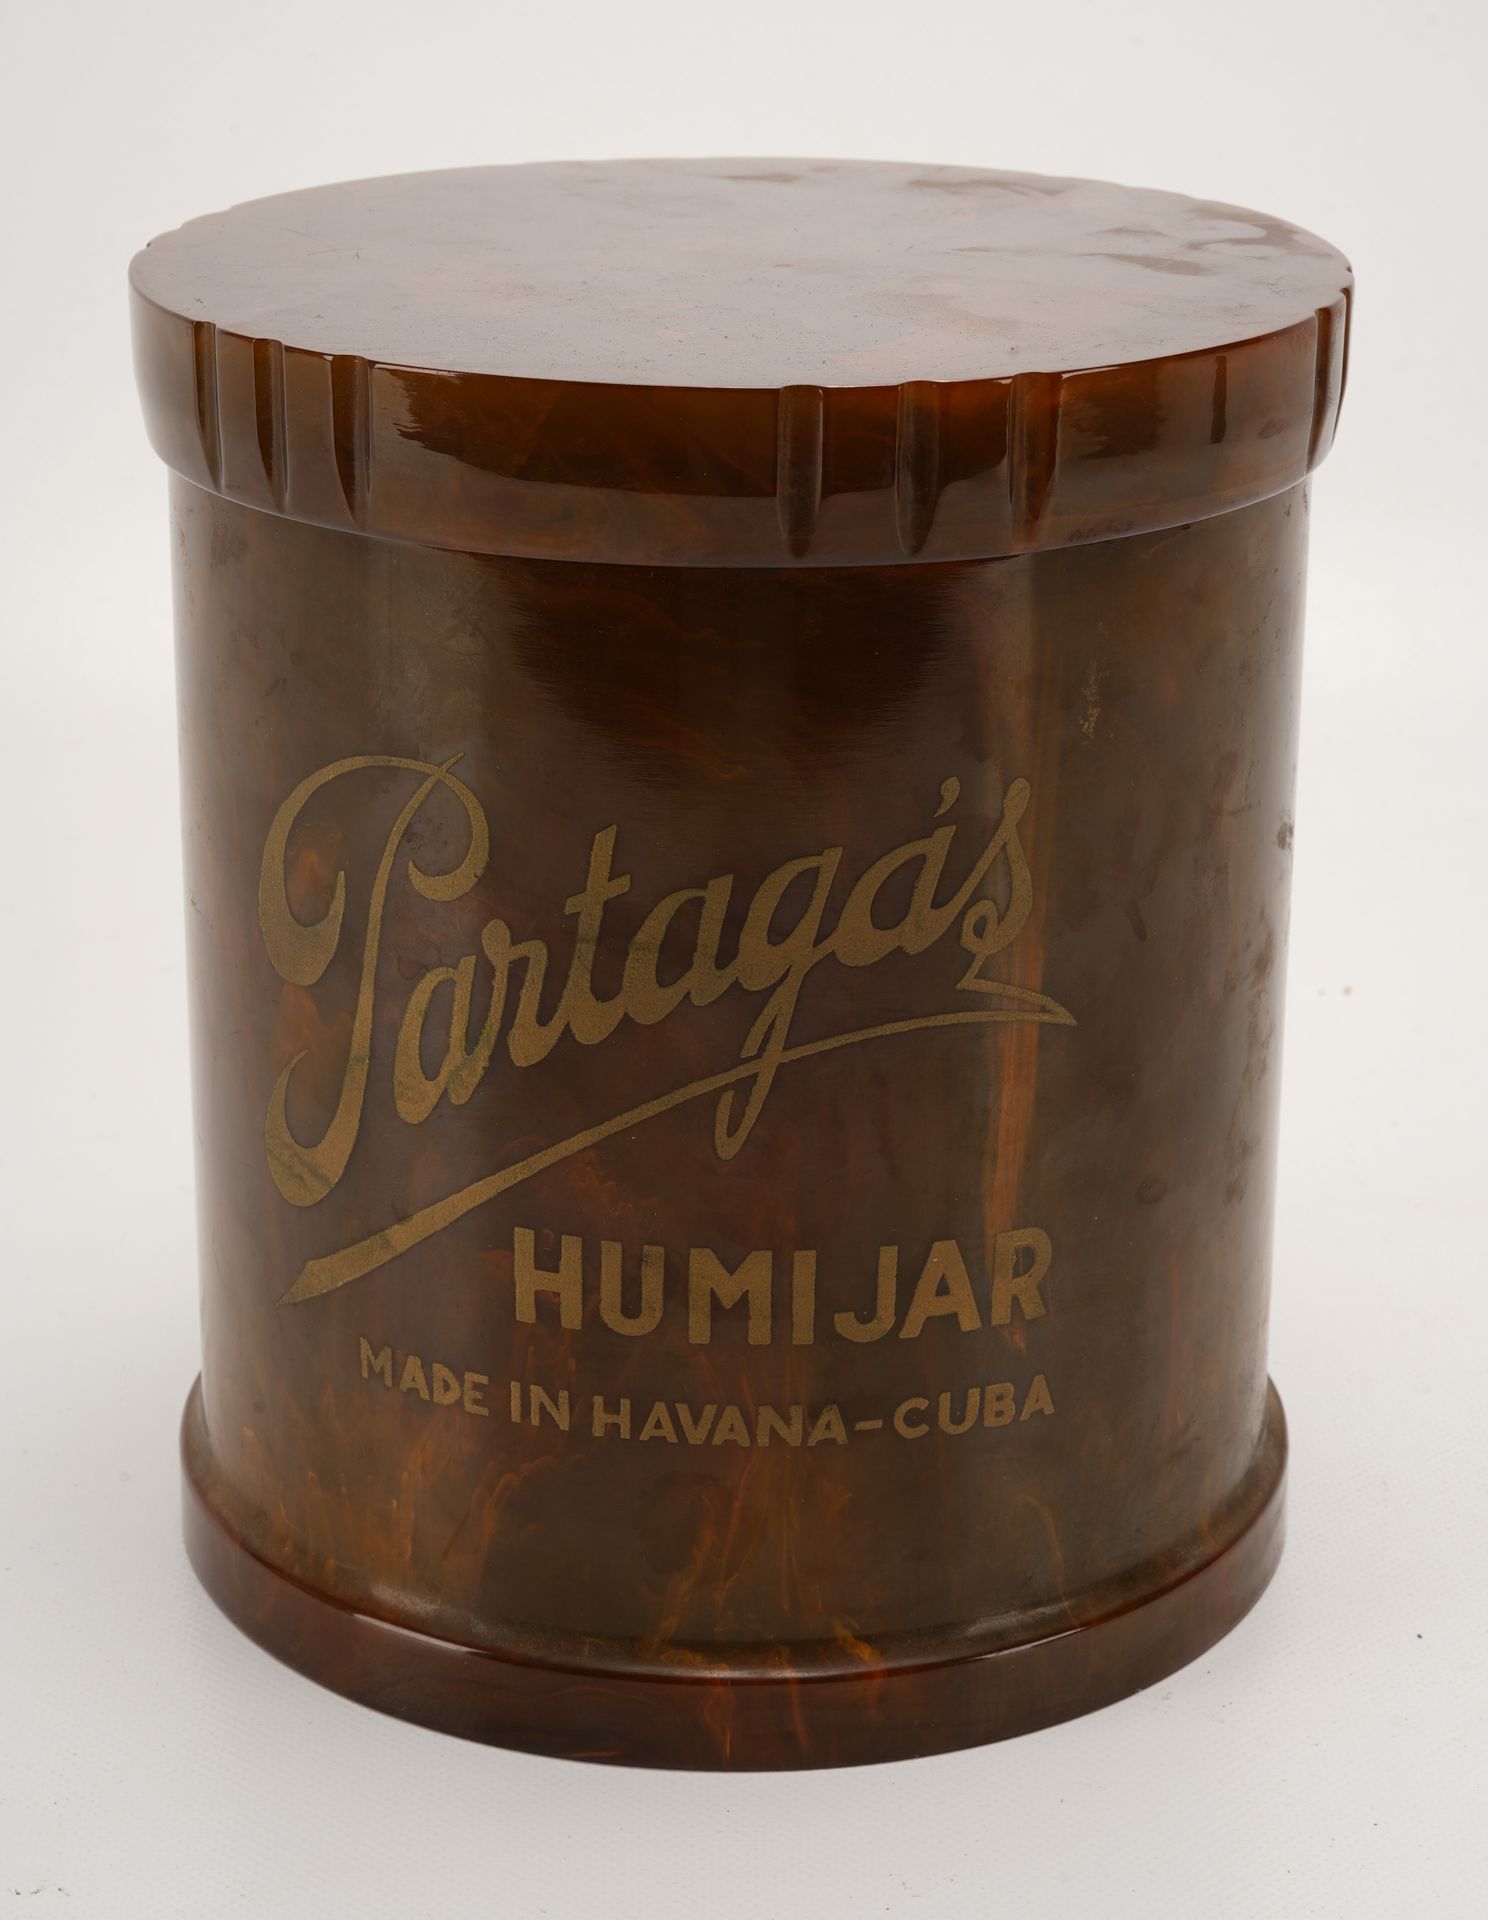 PARTAGAS Humidor Partagas grande con tapa roscada. "Partagas Humijar Made in Hav&hellip;